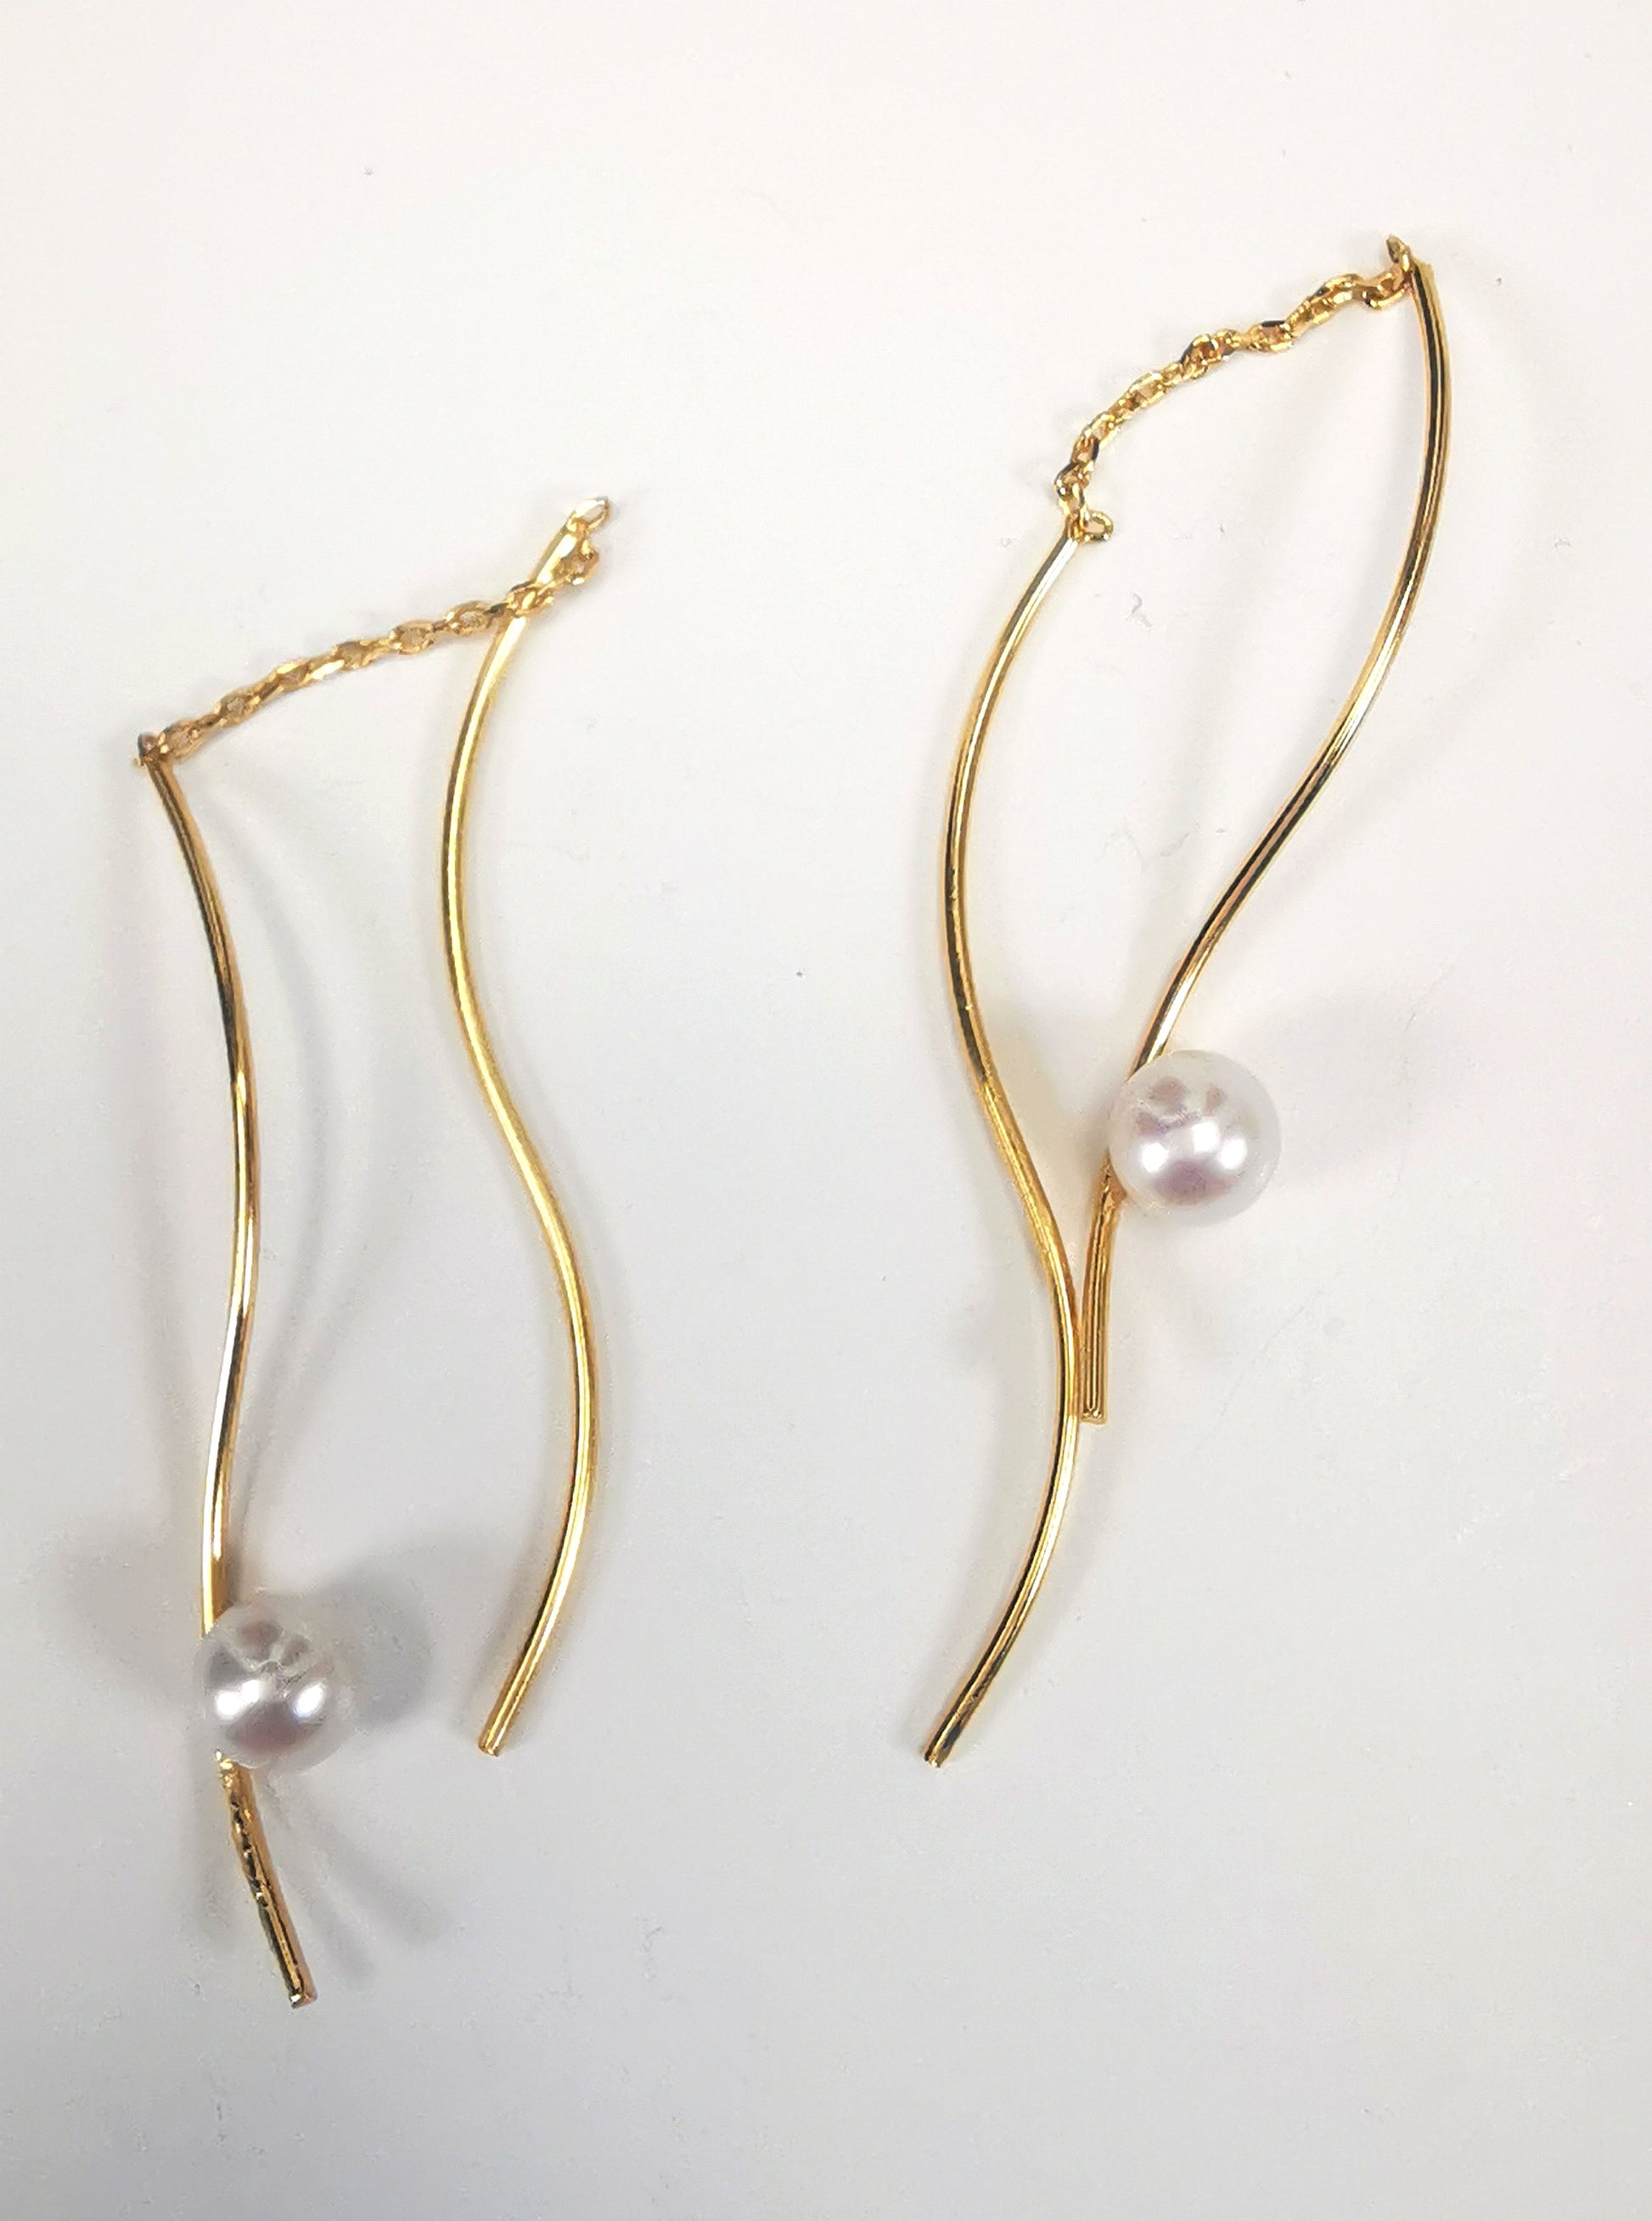 Boucles d'oreilles perles de culture blanches rondes 5mm sur pendants plaqués or. Les pendants sont constitués de deux "s" longs de 45mm reliés par 15mm de chaine. Sur un des 2 "s", la perle est montée perpendiculairement, à 8mm du bas. Présentées cote à cote, perle en bas, boucle de droite perle à droite, celle de gauche, perle à gauche, posées sur fond blanc. Vue de dessus.